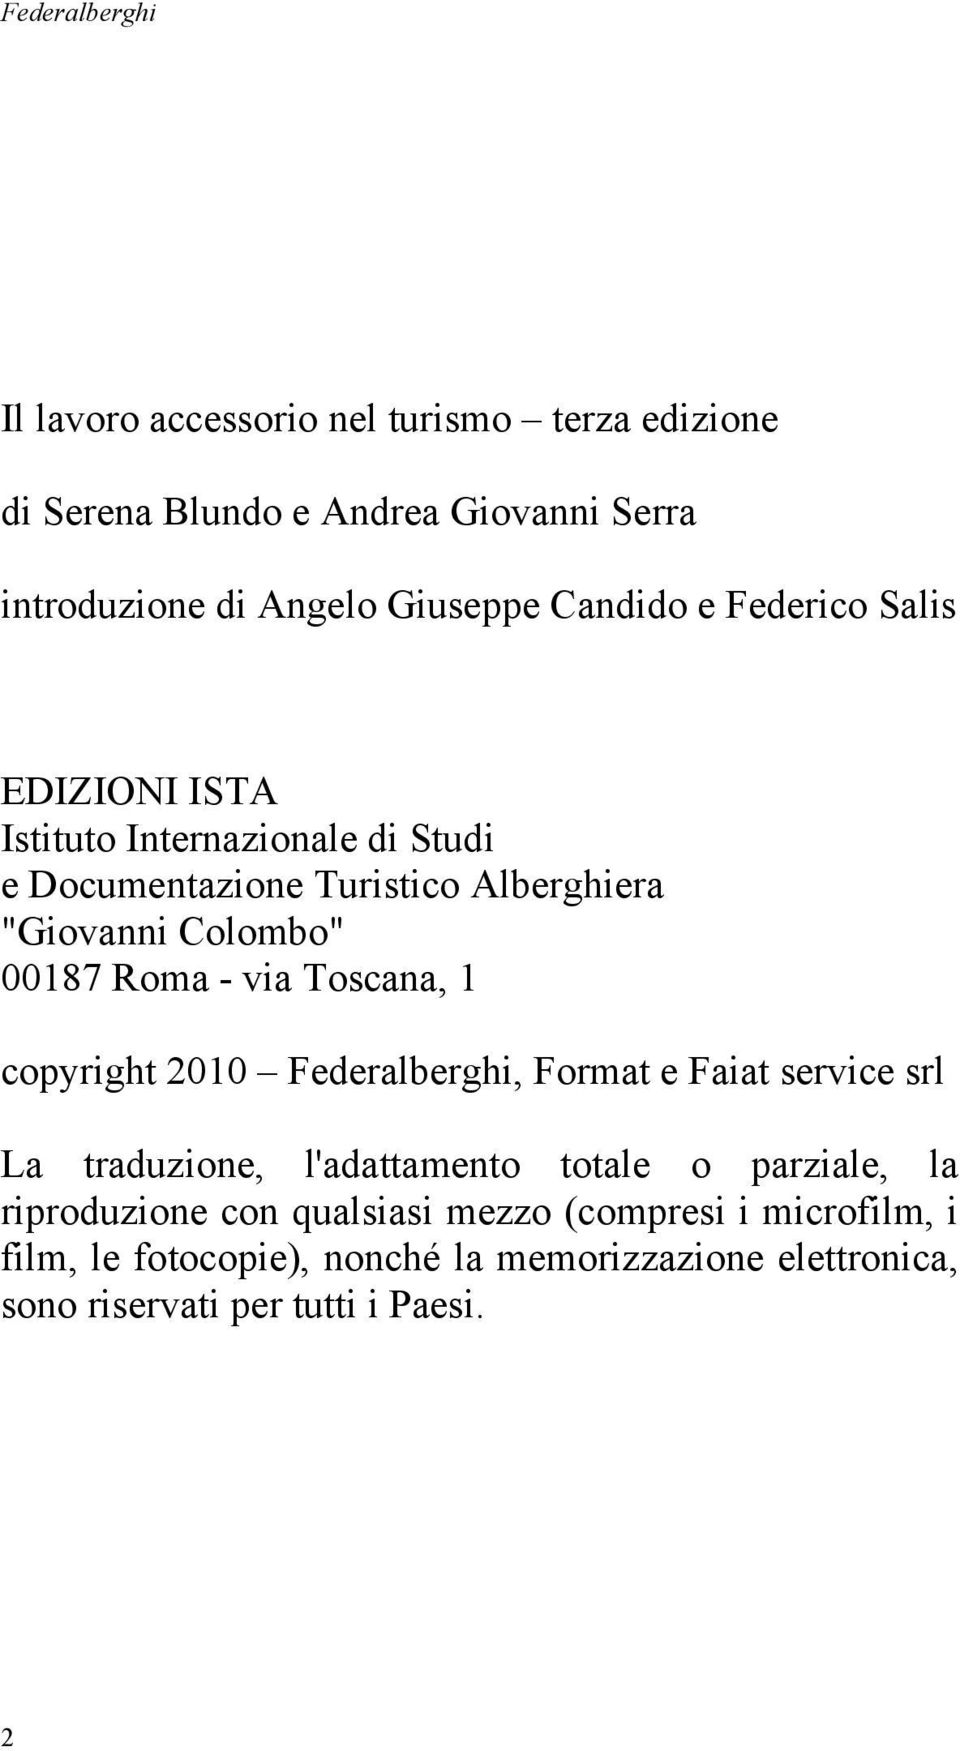 Roma - via Toscana, 1 copyright 2010 Federalberghi, Format e Faiat service srl La traduzione, l'adattamento totale o parziale, la